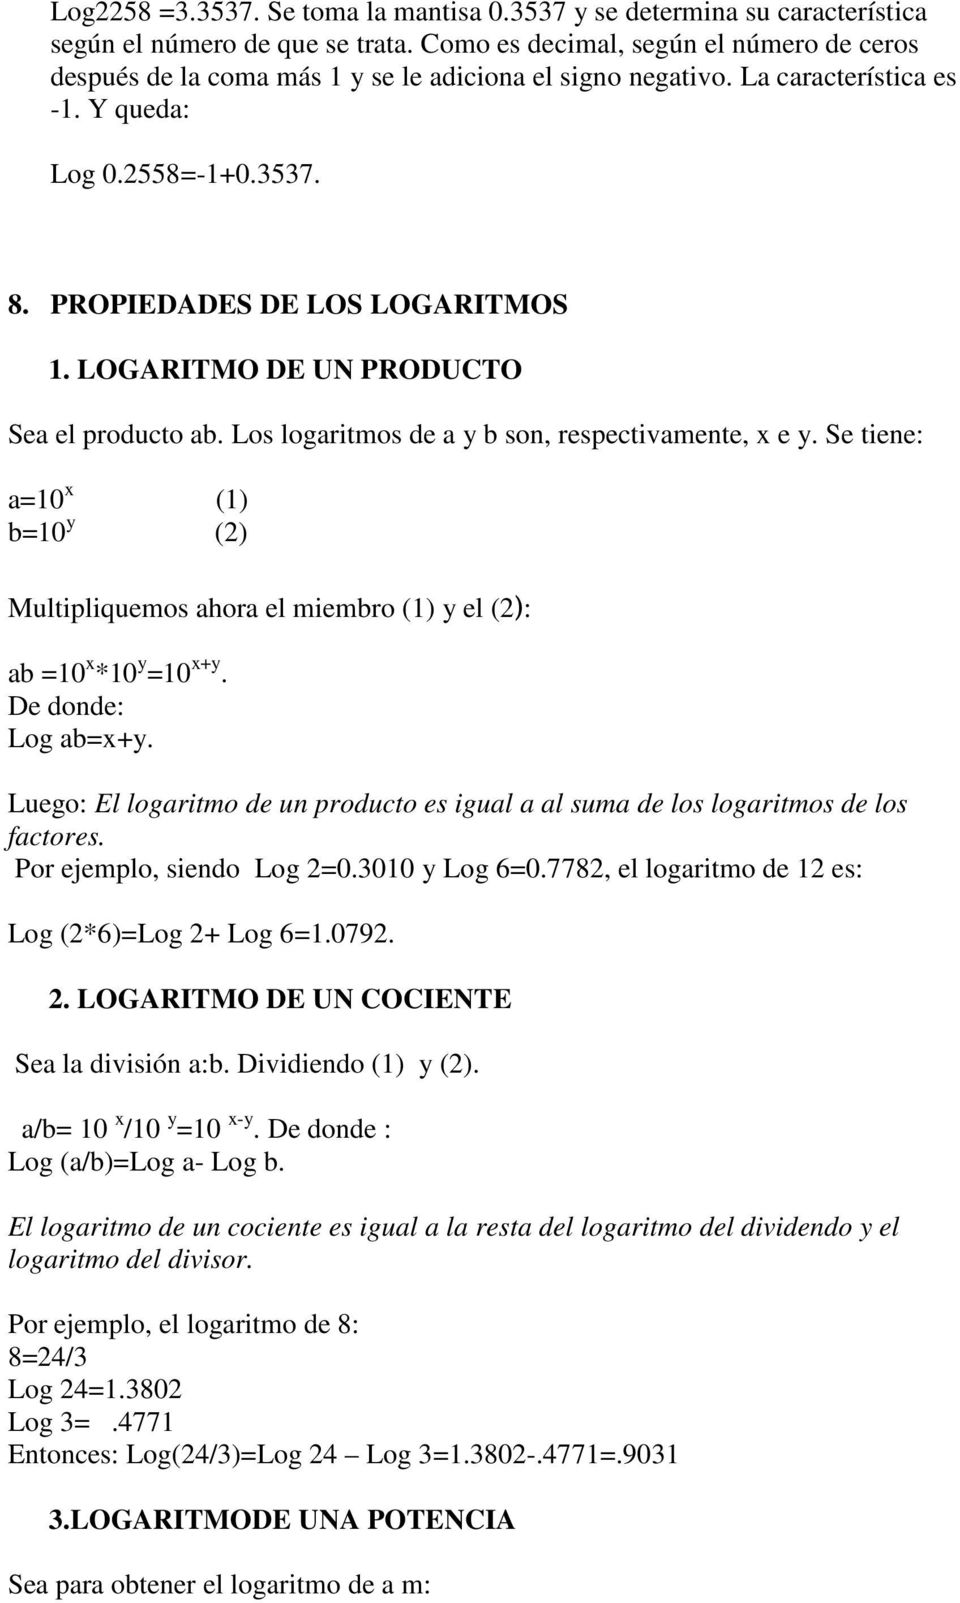 LOGARITMO DE UN PRODUCTO Sea el producto ab. Los logaritmos de a y b son, respectivamente, x e y. Se tiene: a=10 x (1) b=10 y (2) Multipliquemos ahora el miembro (1) y el (2): ab =10 x *10 y =10 x+y.